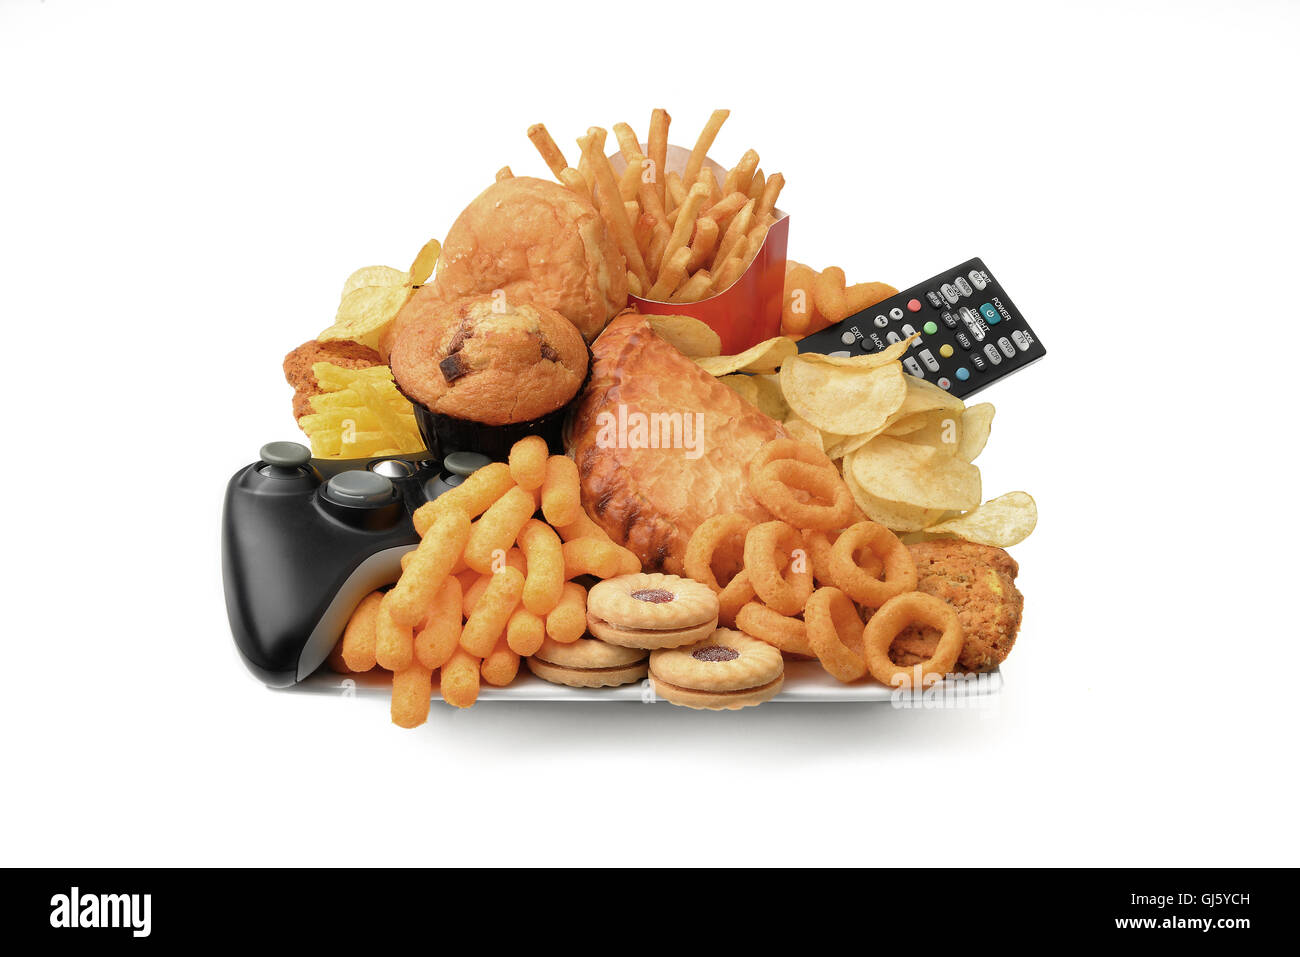 Ungesunde Ernährung und Lebensstil auf einem Teller mit Junk-Food Chips Chips mit Fernbedienung, Konsole schlechte Ernährung Übergewicht schlechte Gesundheit Stockfoto